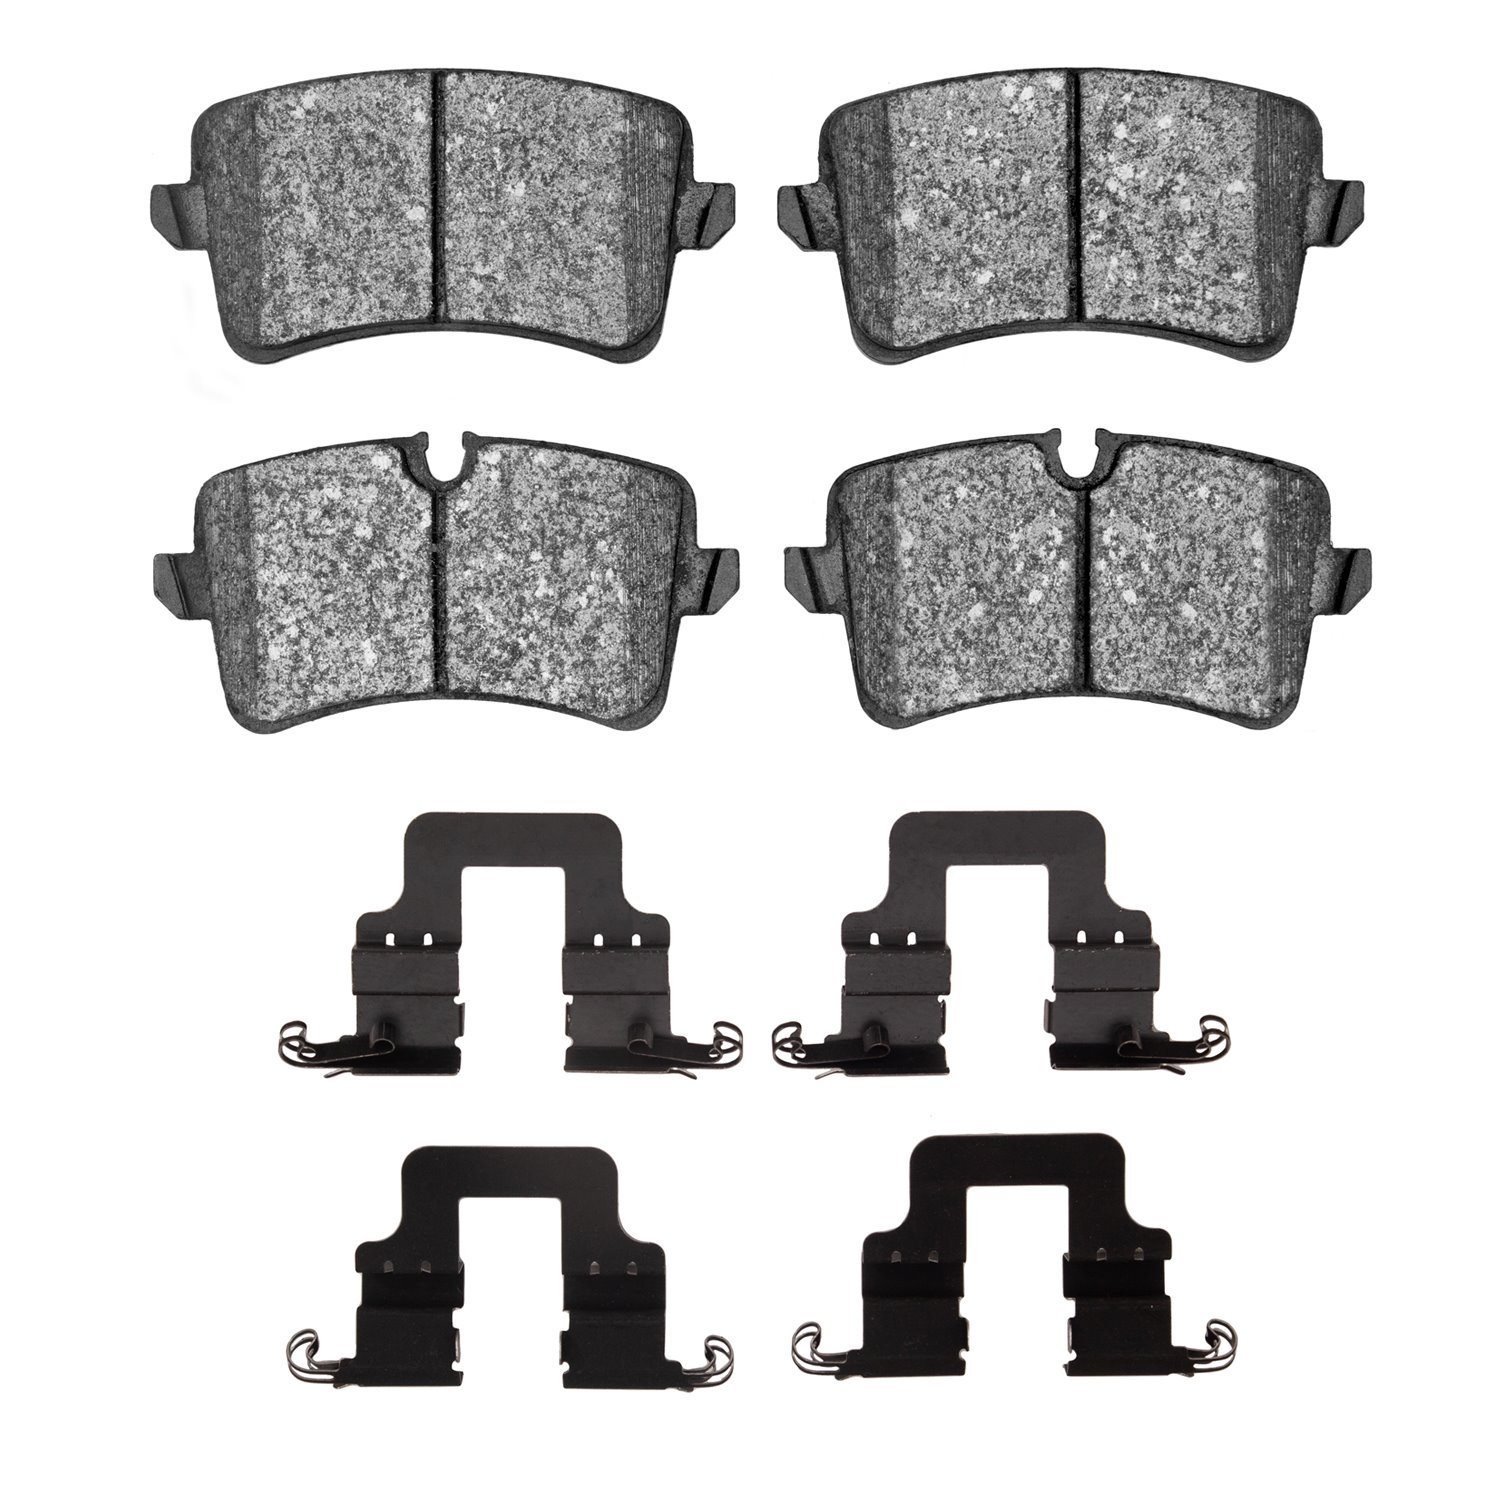 1551-1547-11 5000 Advanced Low-Metallic Brake Pads & Hardware Kit, 2012-2013 Audi/Volkswagen, Position: Rear